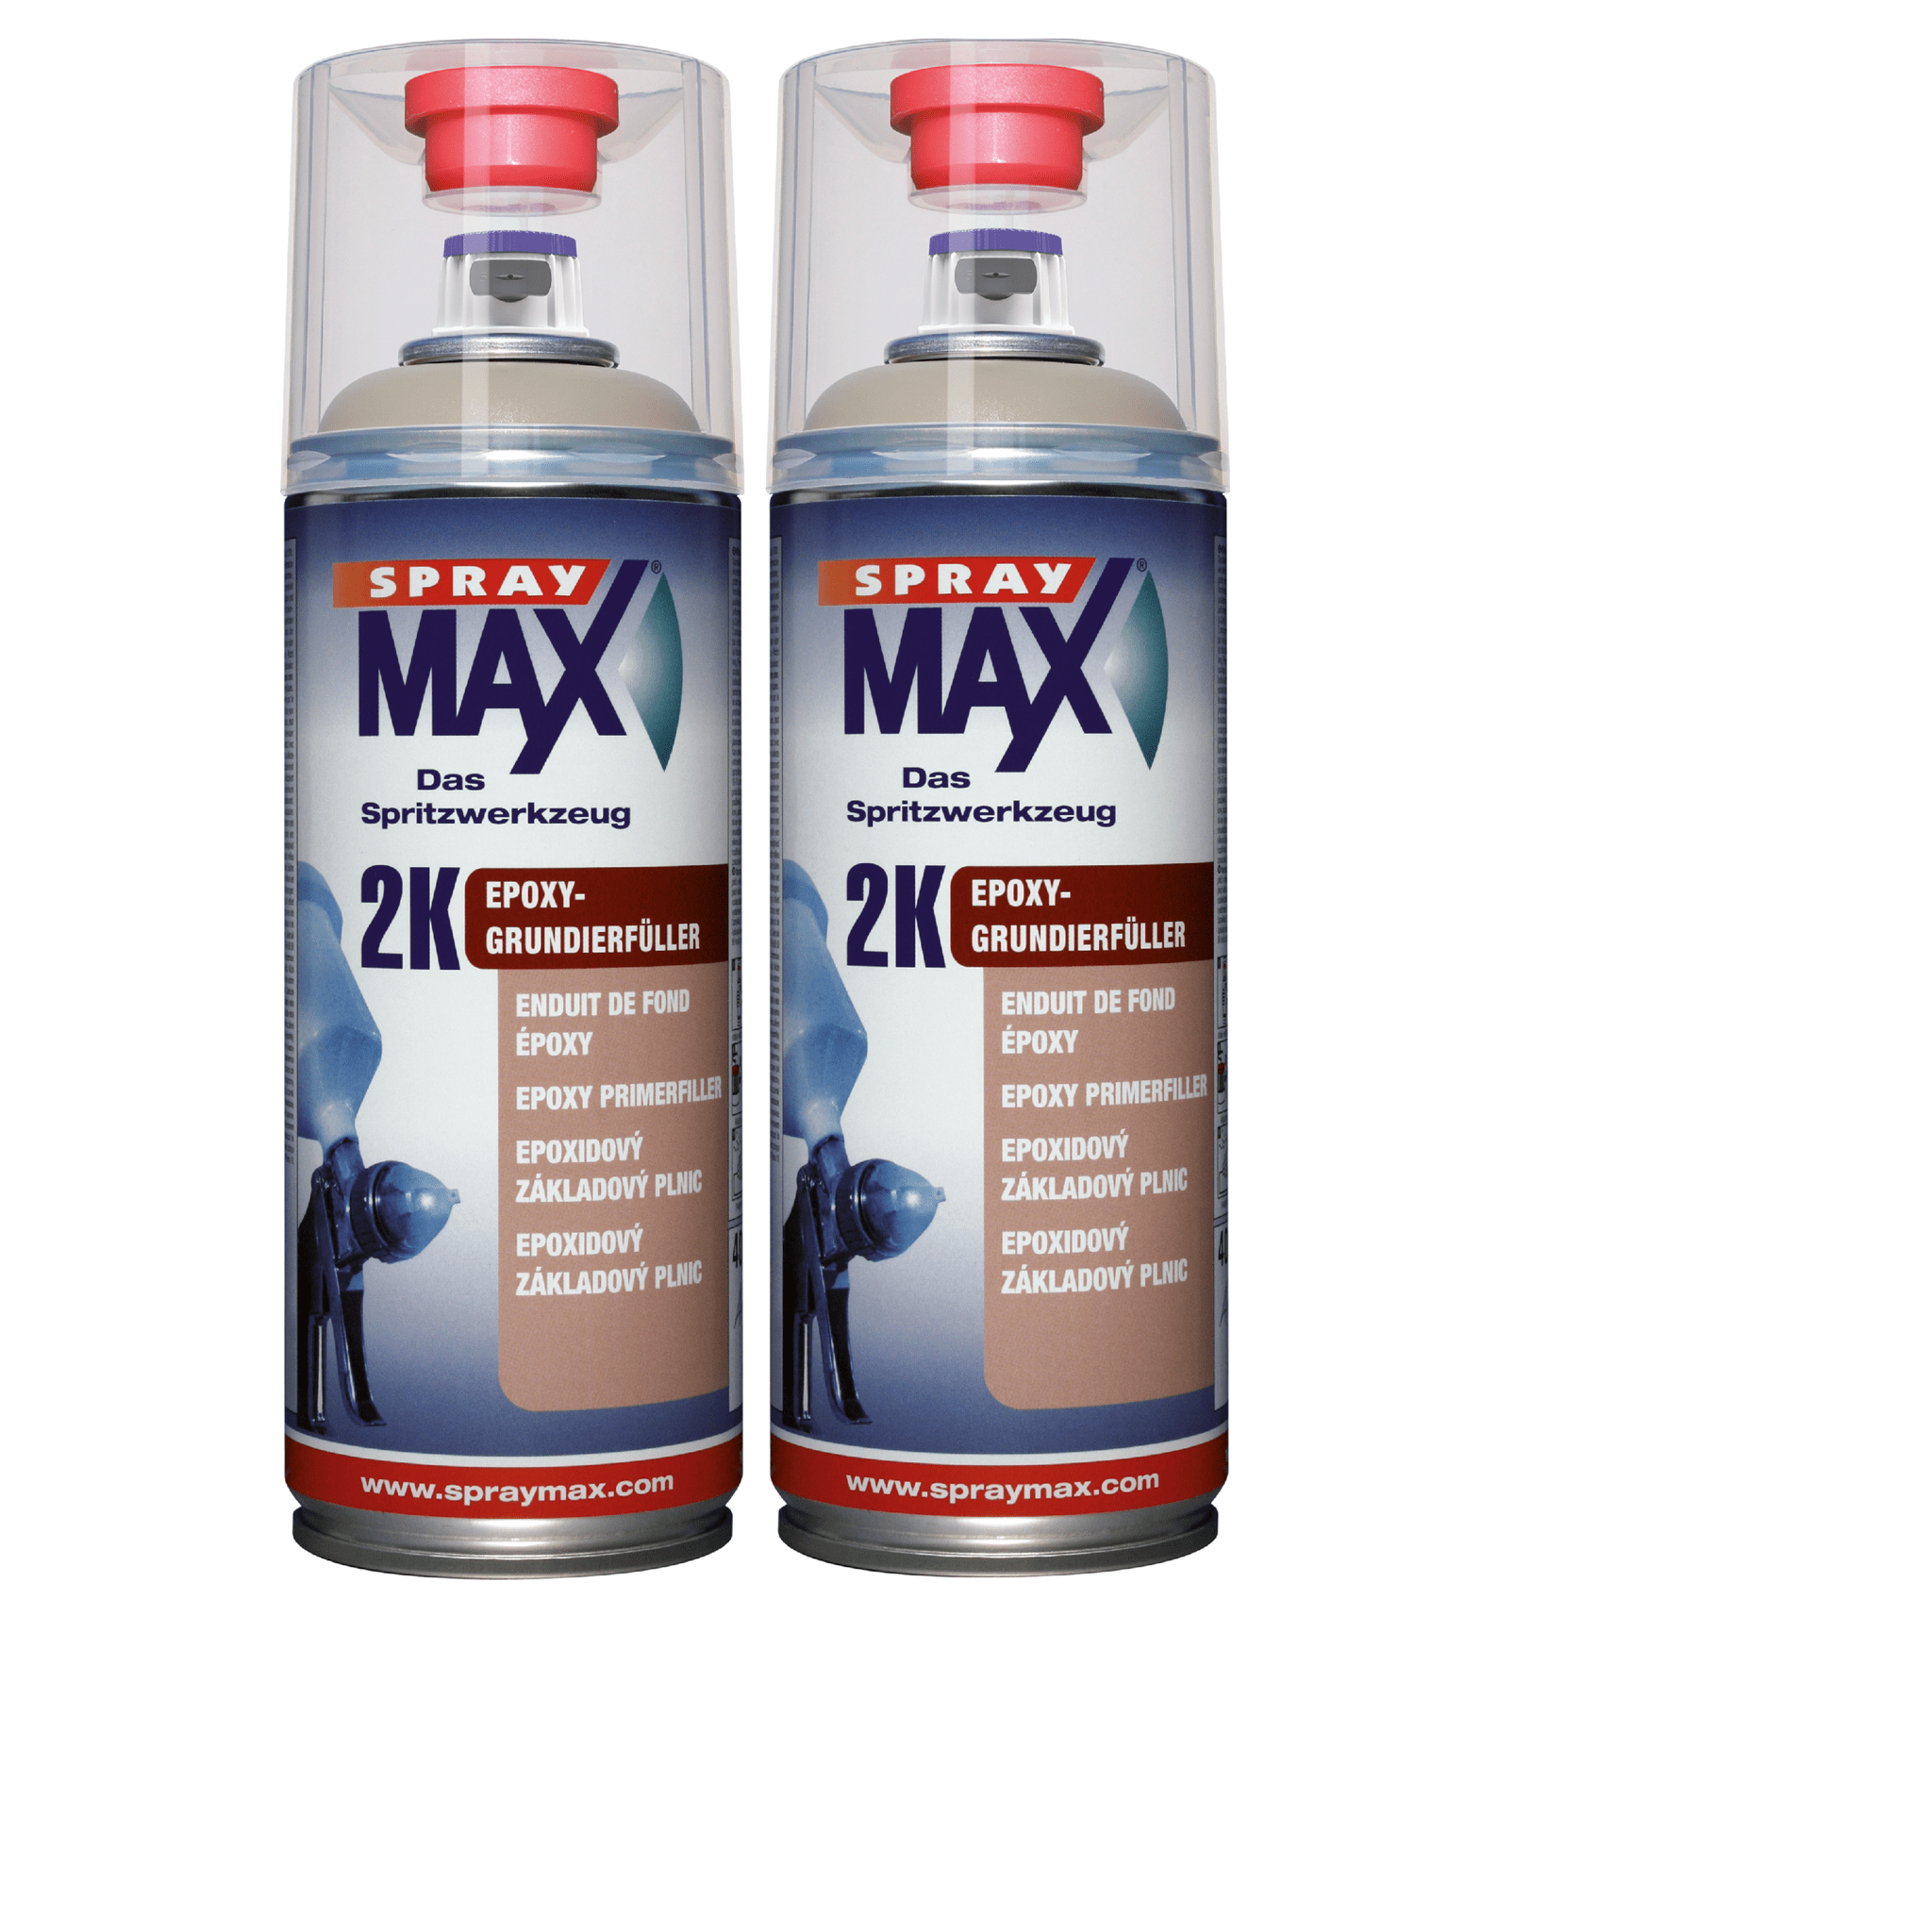 Afbeelding van SprayMax 2K Epoxy-Grundierfüller beige Spray 2 x 400ml